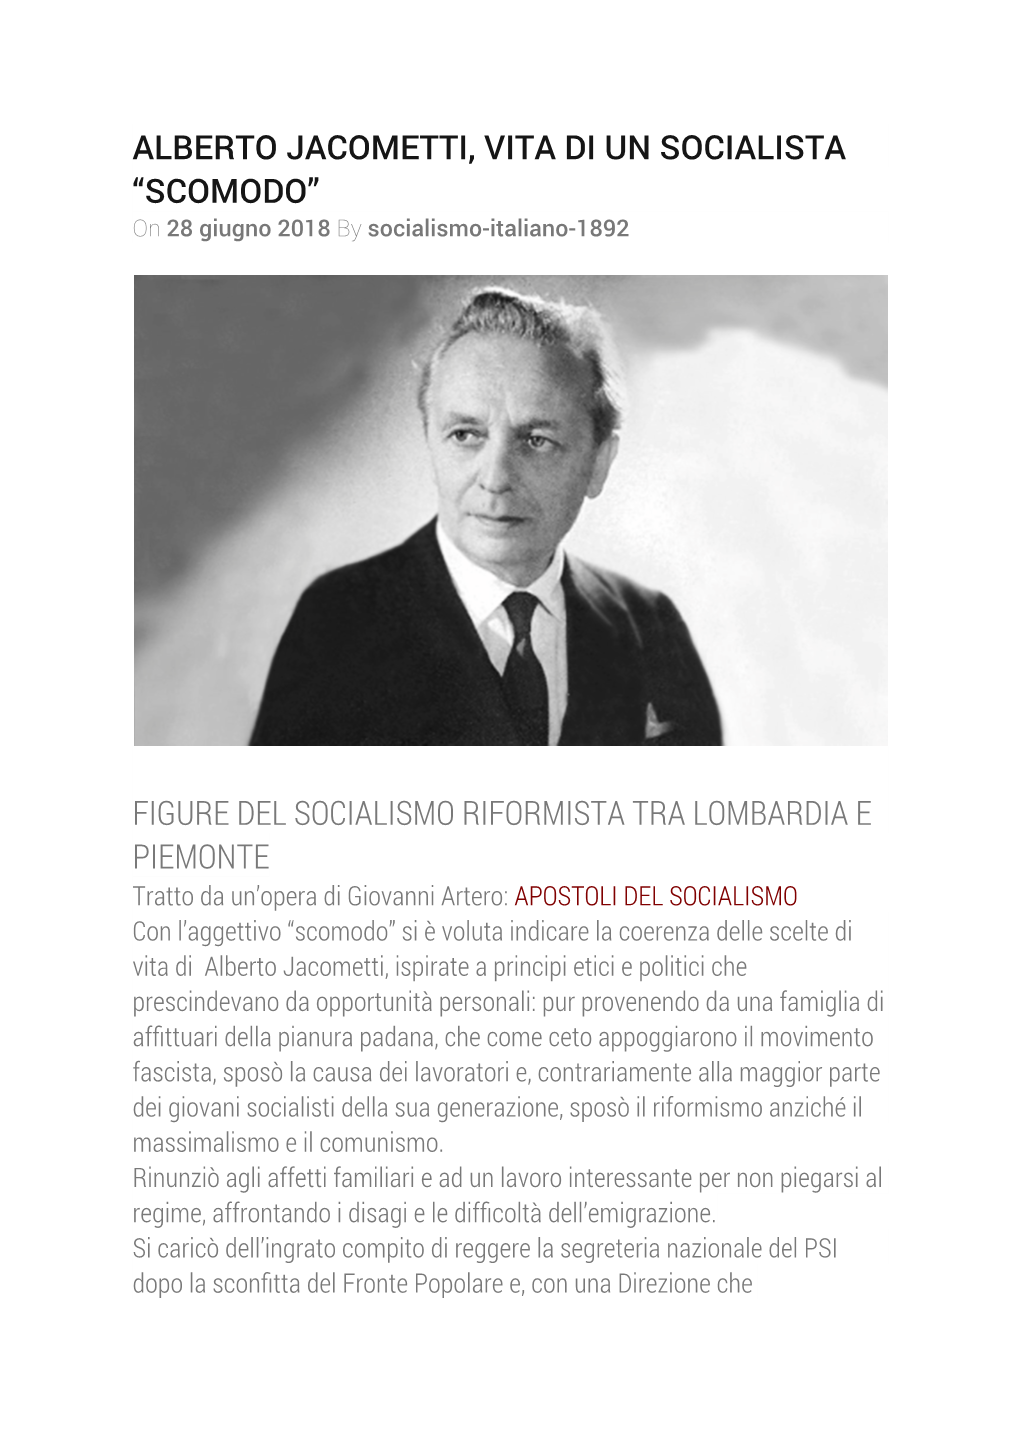 ALBERTO JACOMETTI, VITA DI UN SOCIALISTA “SCOMODO” on 28 Giugno 2018 by Socialismo-Italiano-1892